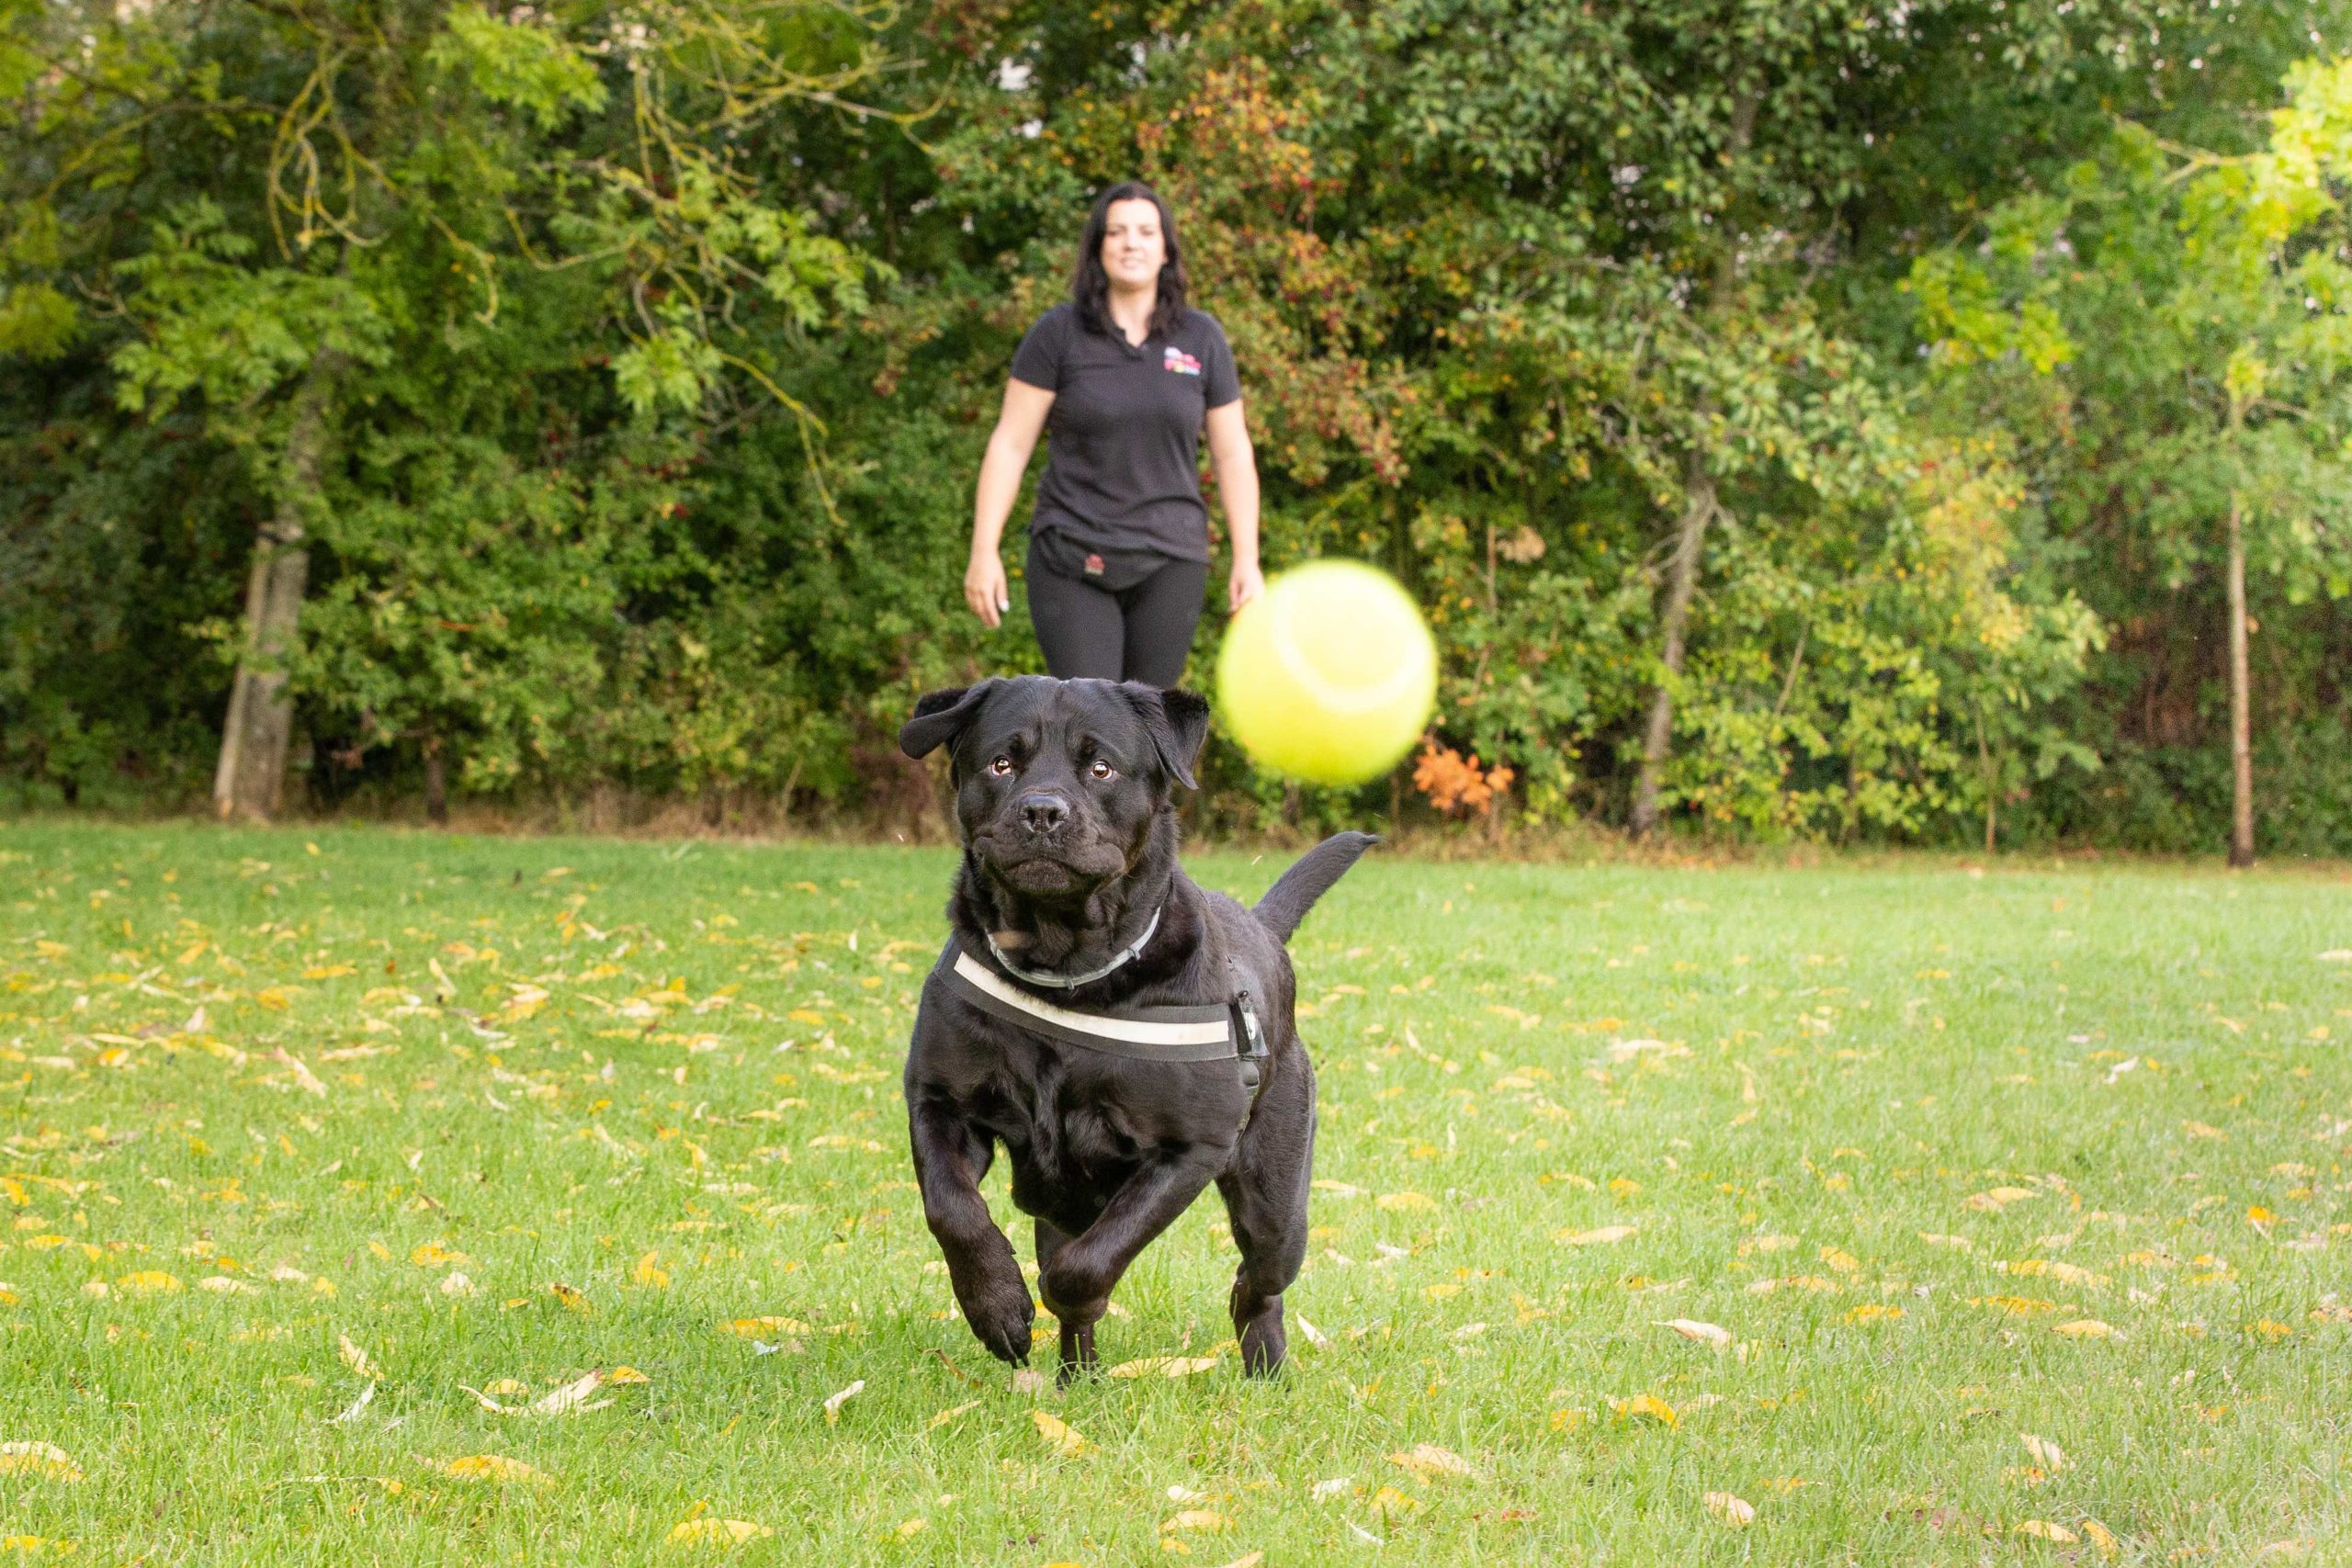 Black dog chasing a ball